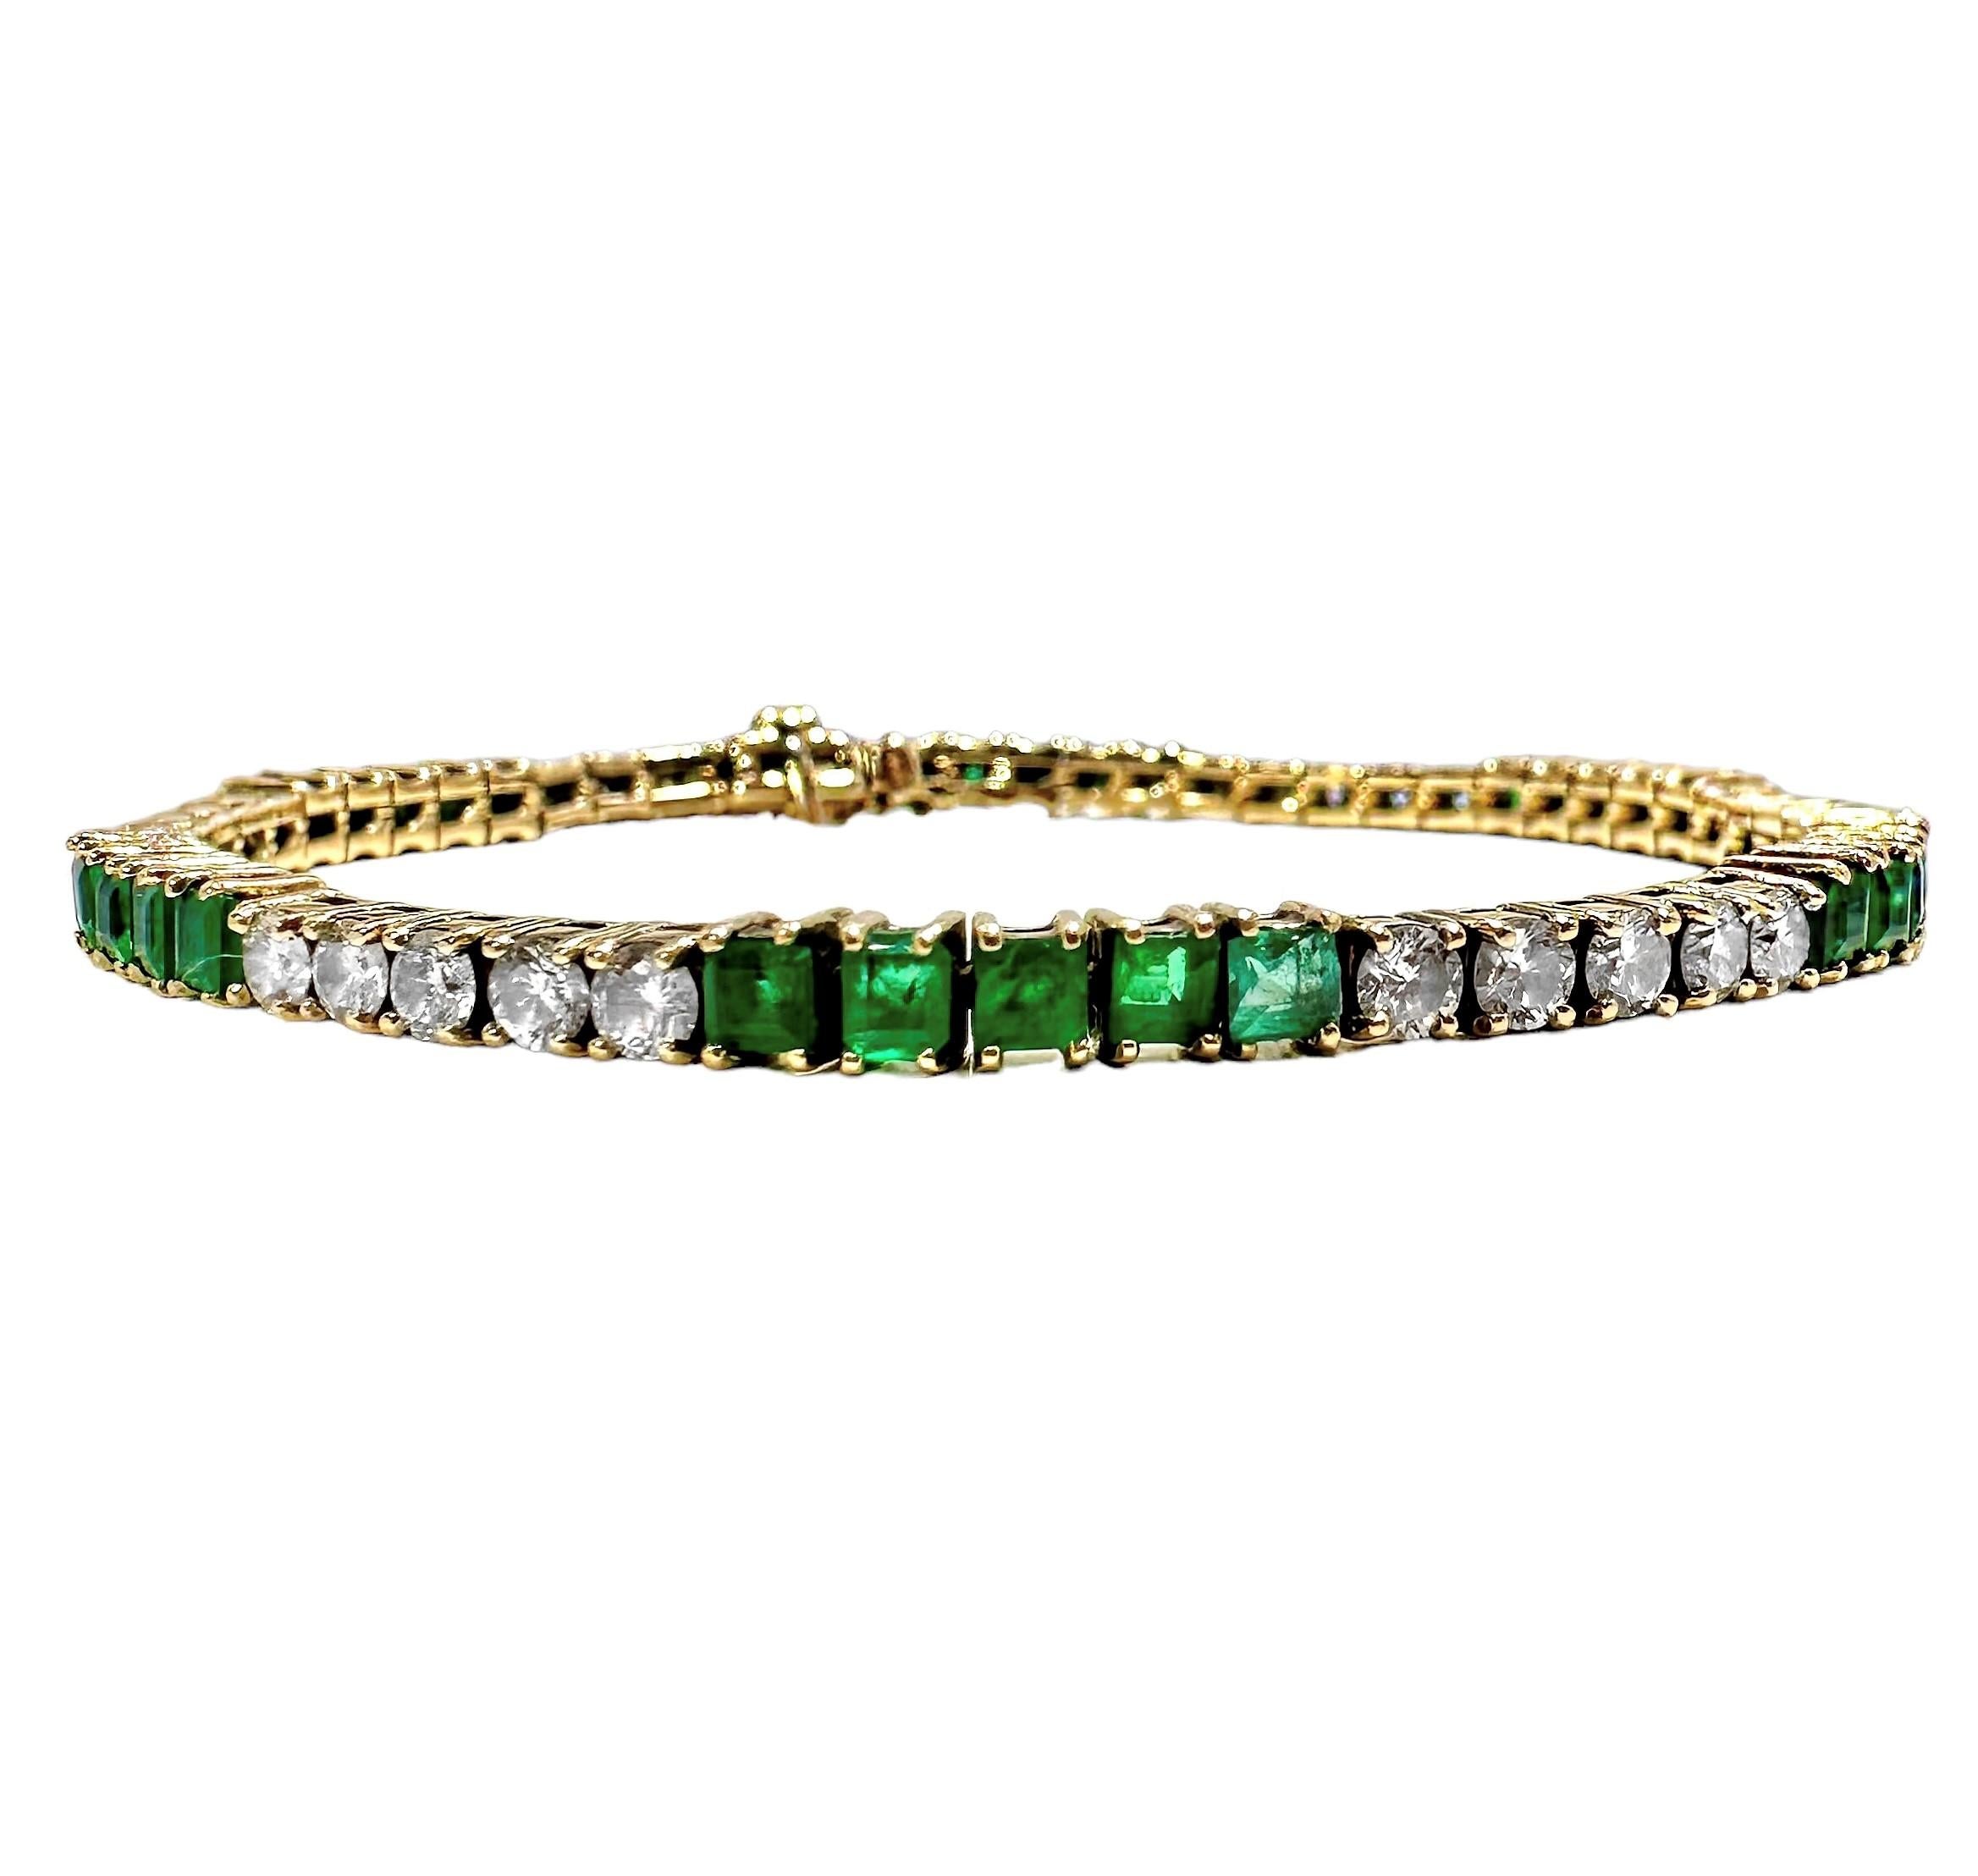 Dieses zarte französische Tennisarmband aus der Mitte des 20. Jahrhunderts wurde mit viel Geschick aus 18 Karat Gelbgold gefertigt und besteht abwechselnd aus 5 Steinen, Diamanten im Brillantschliff und leuchtend grünen Smaragden. Die 30 Diamanten